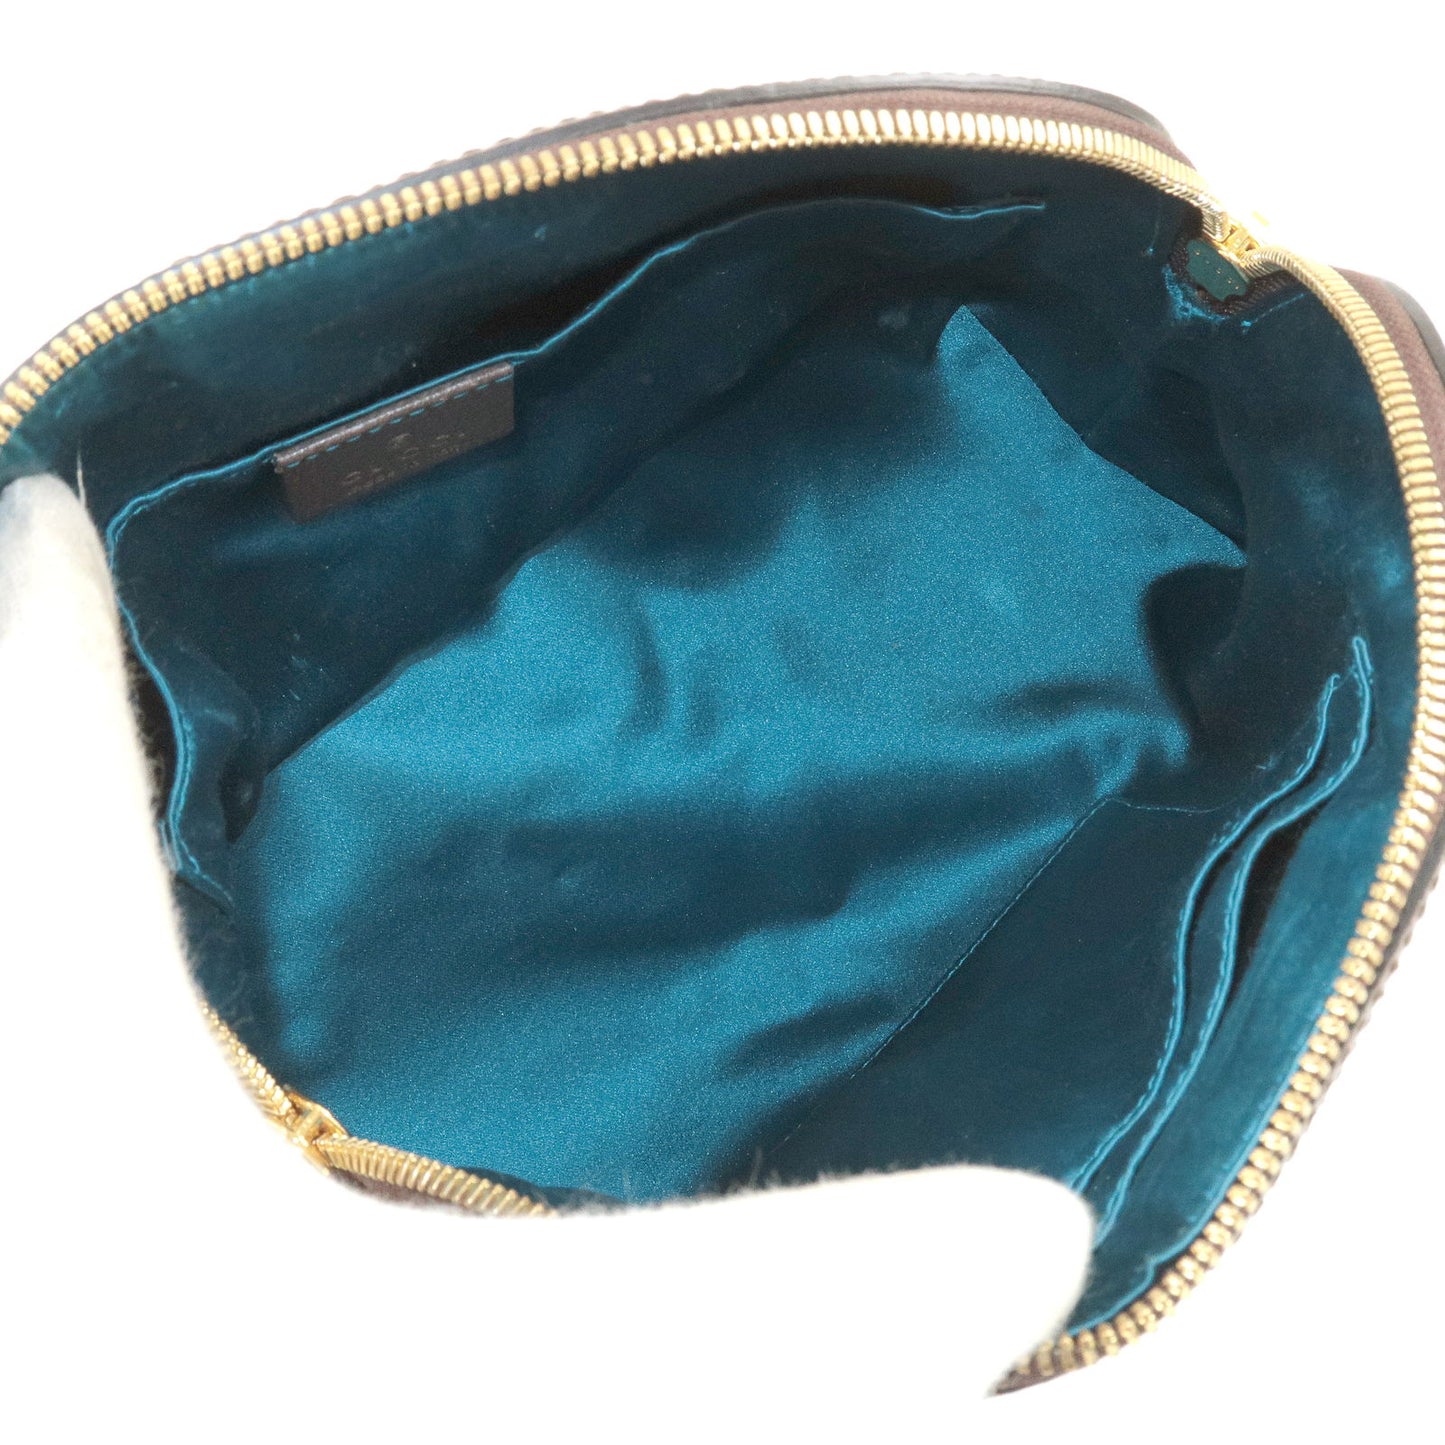 GUCCI Ophidia GG Supreme Leather Shoulder Bag Beige 499621